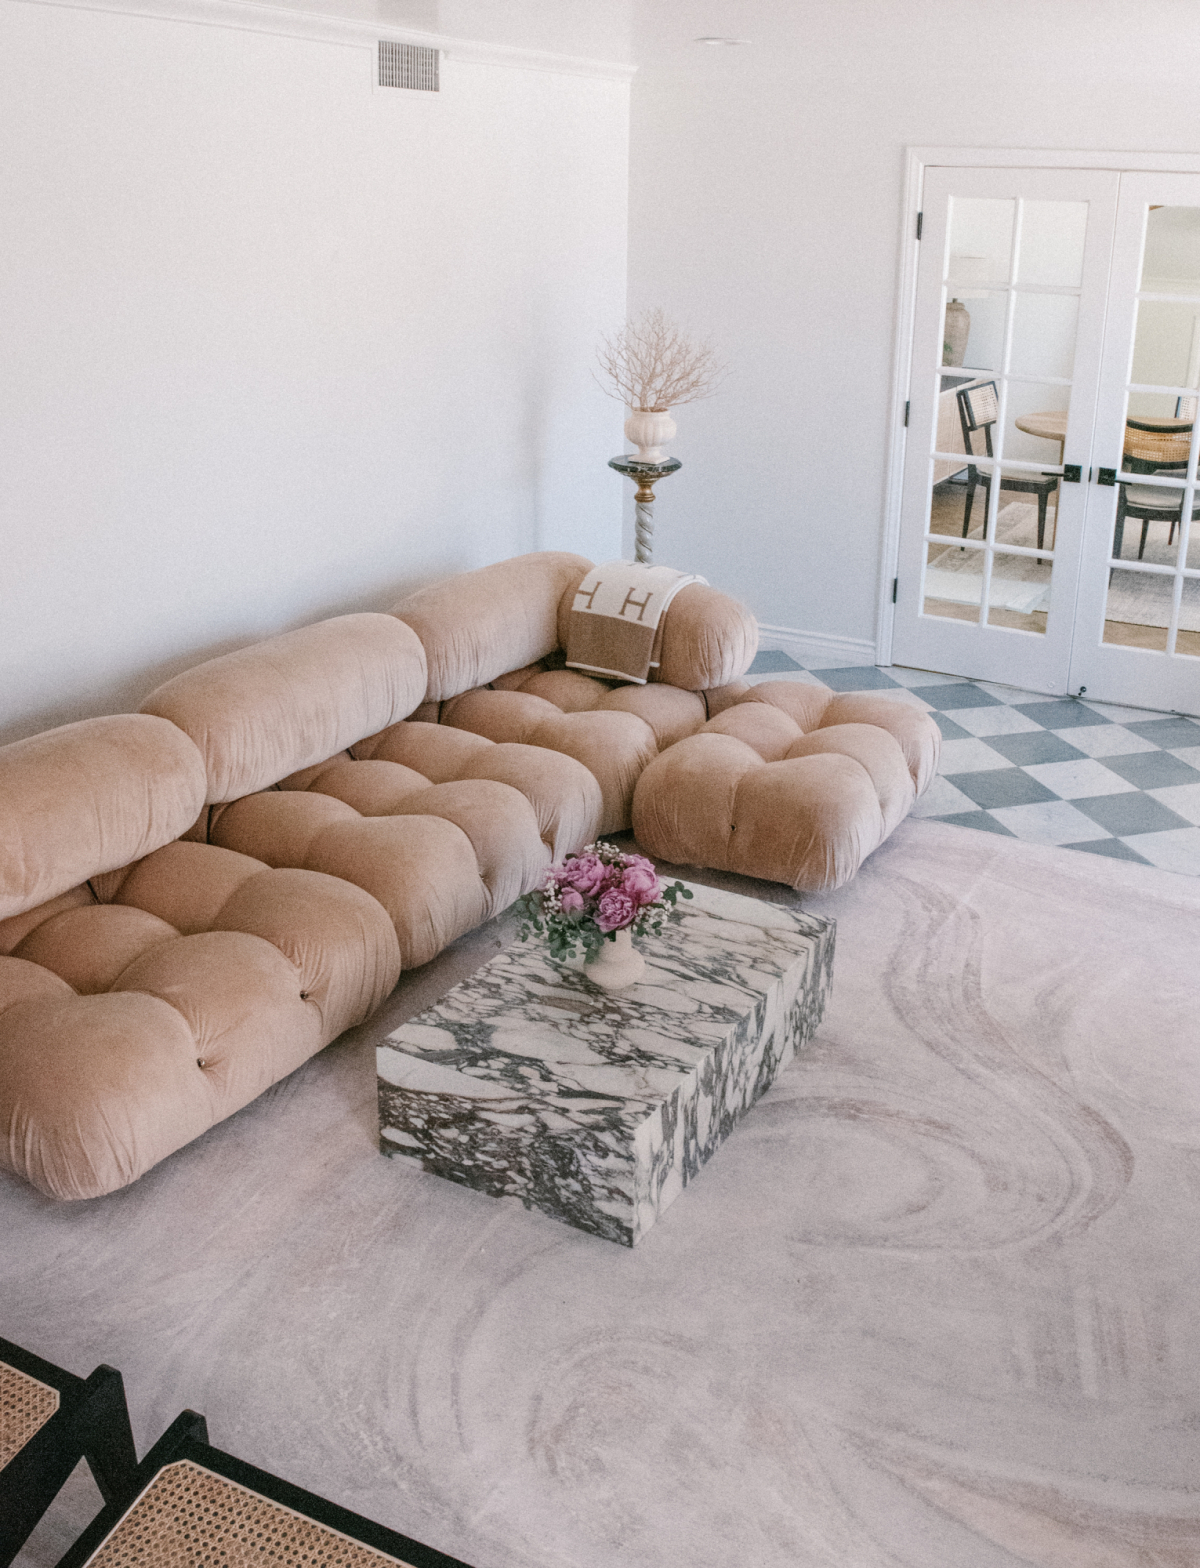 Modern Living room design